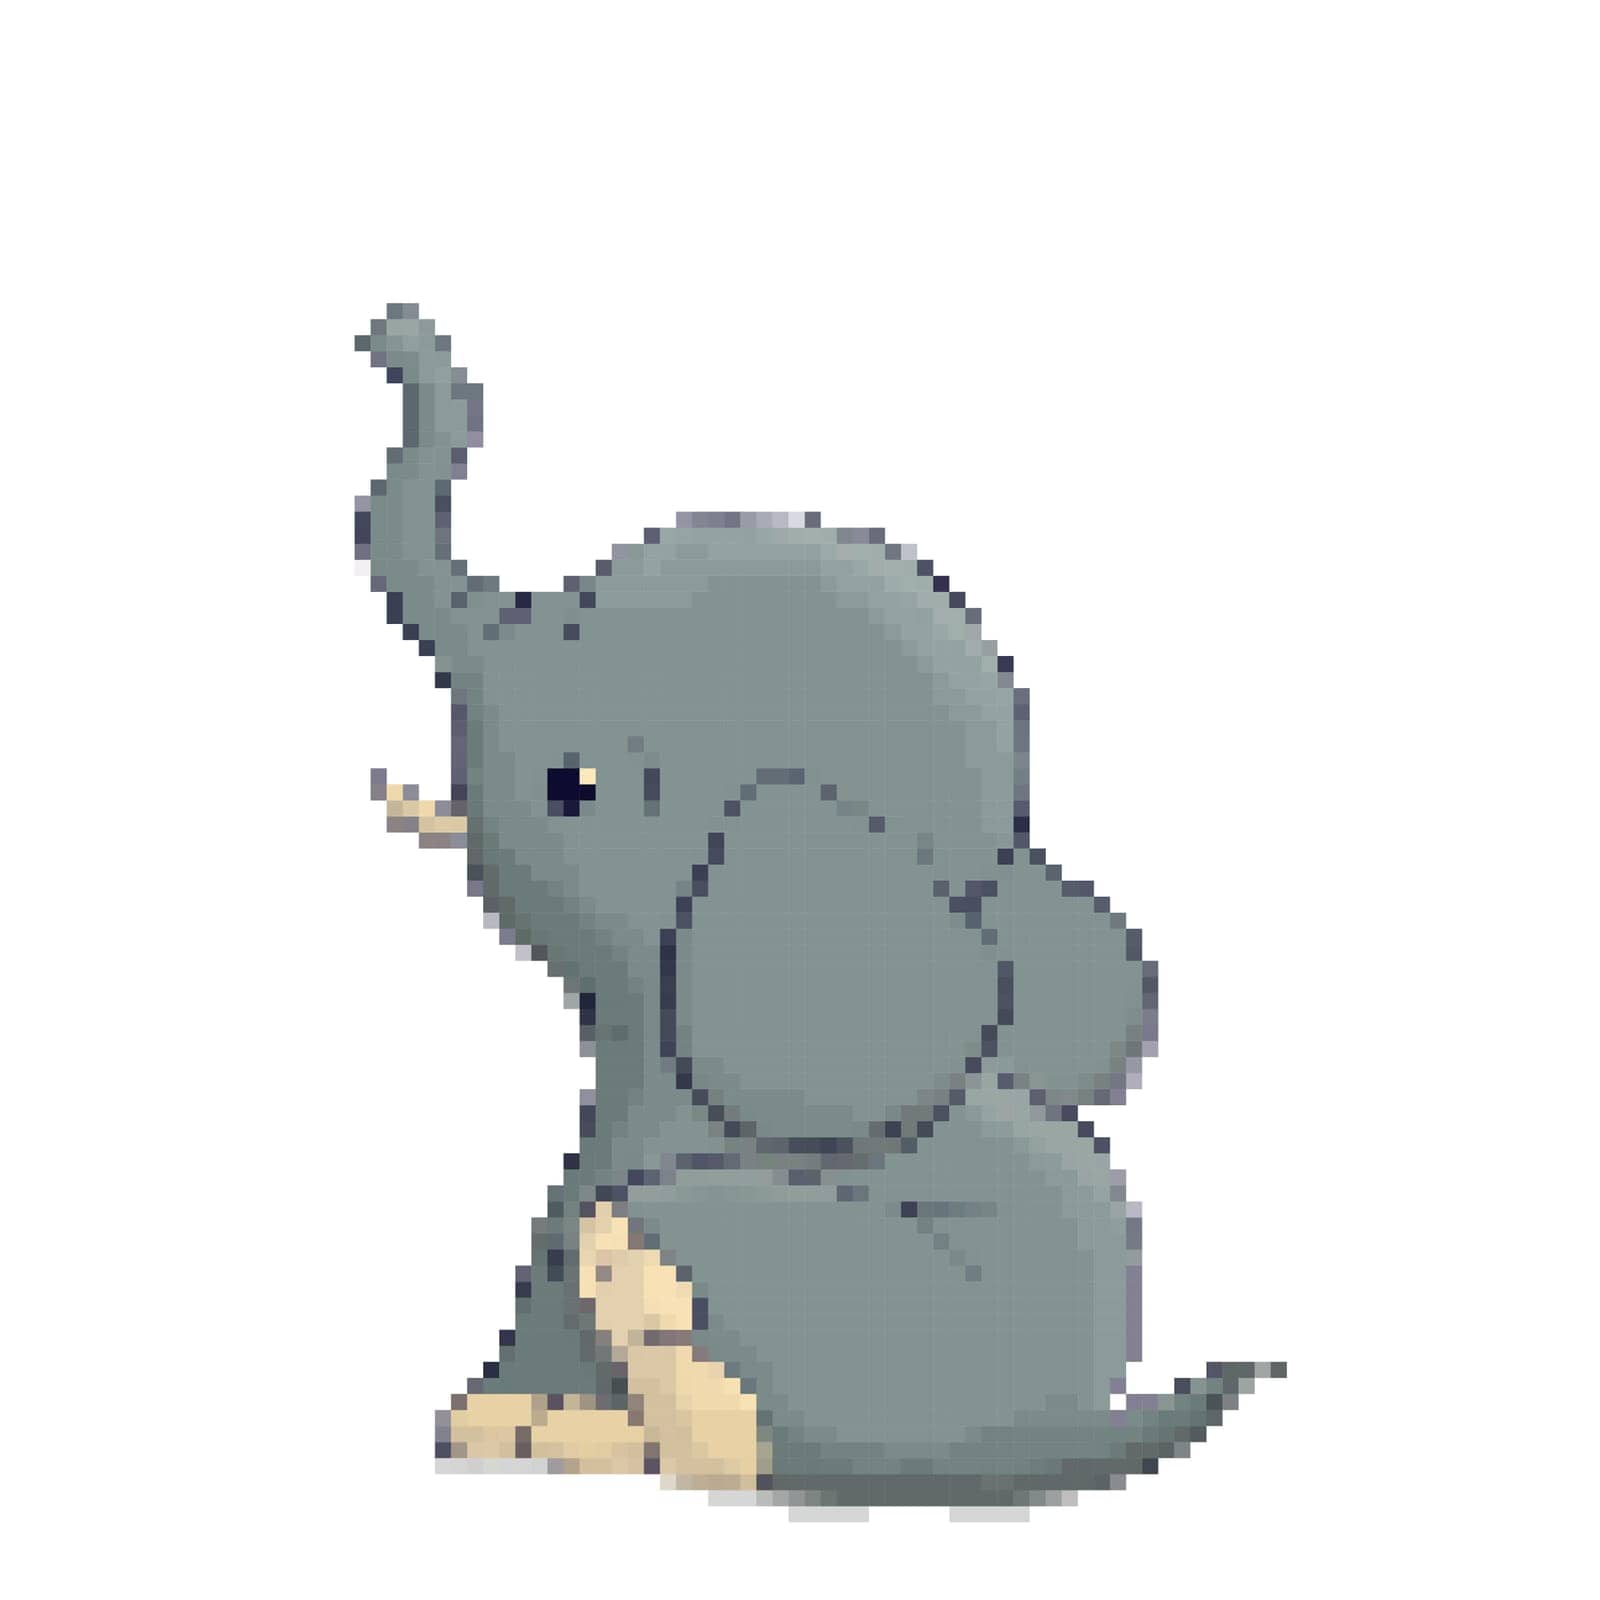 Baby elephant 8 bit icon by Lirch